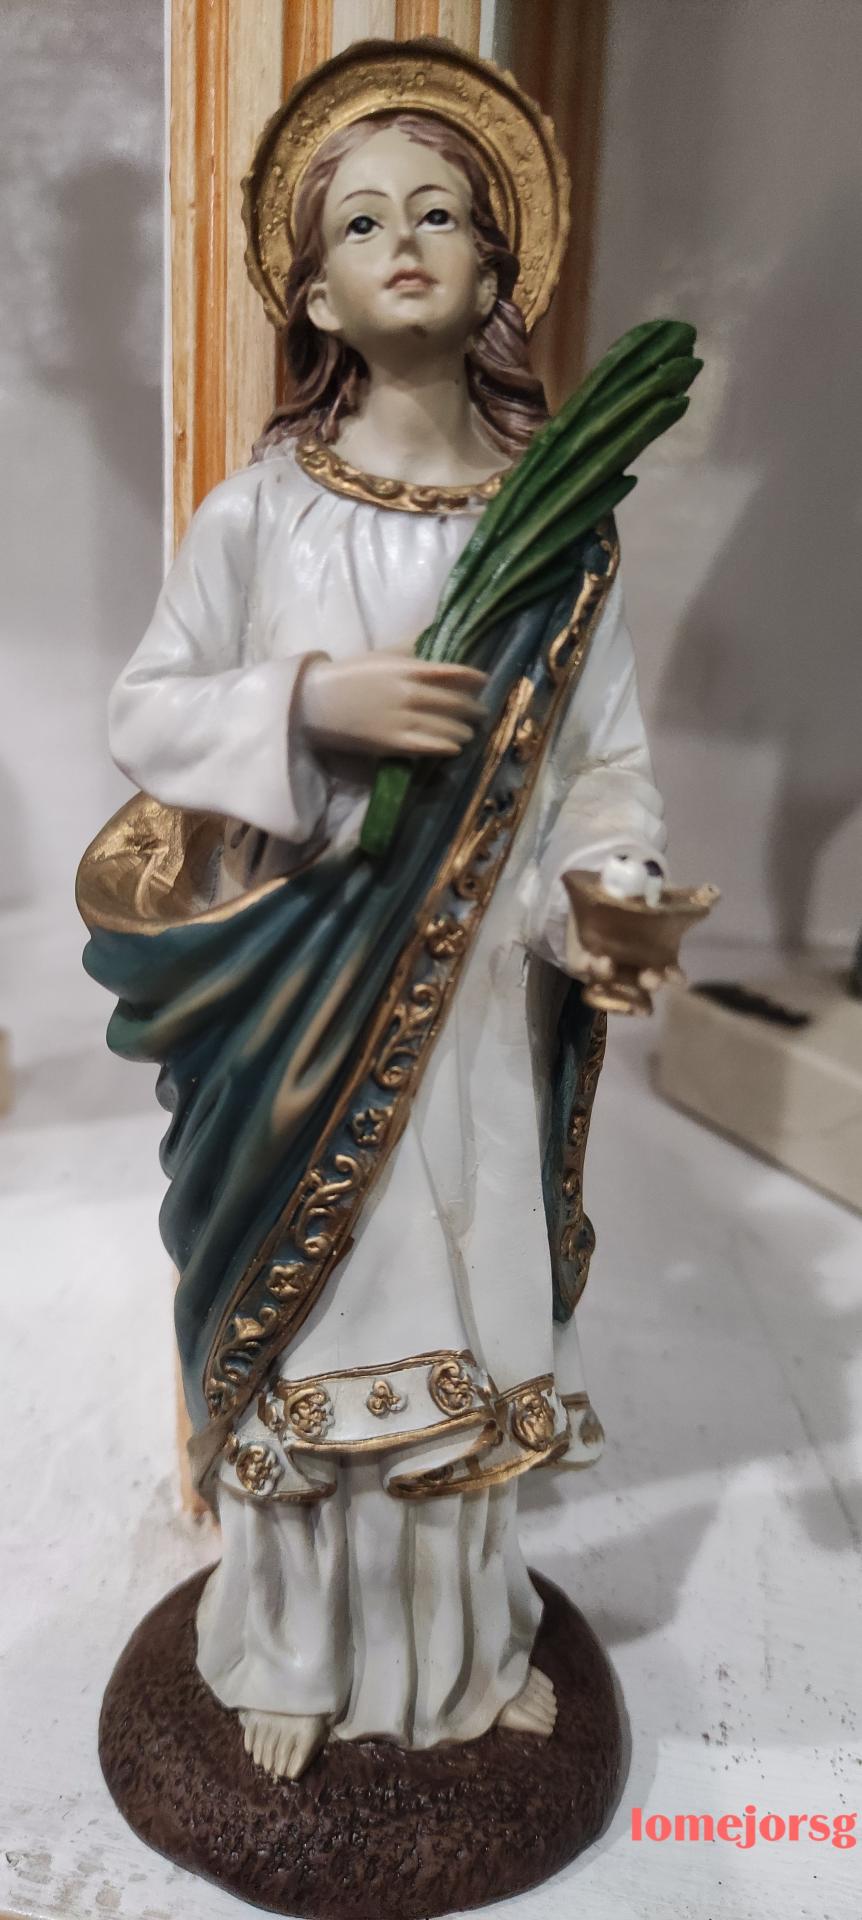 figura-santa-lucia-resina-22cm-javier- 0019269-regalo-imagenes-religiosas-santas-lomejorsg.jpg